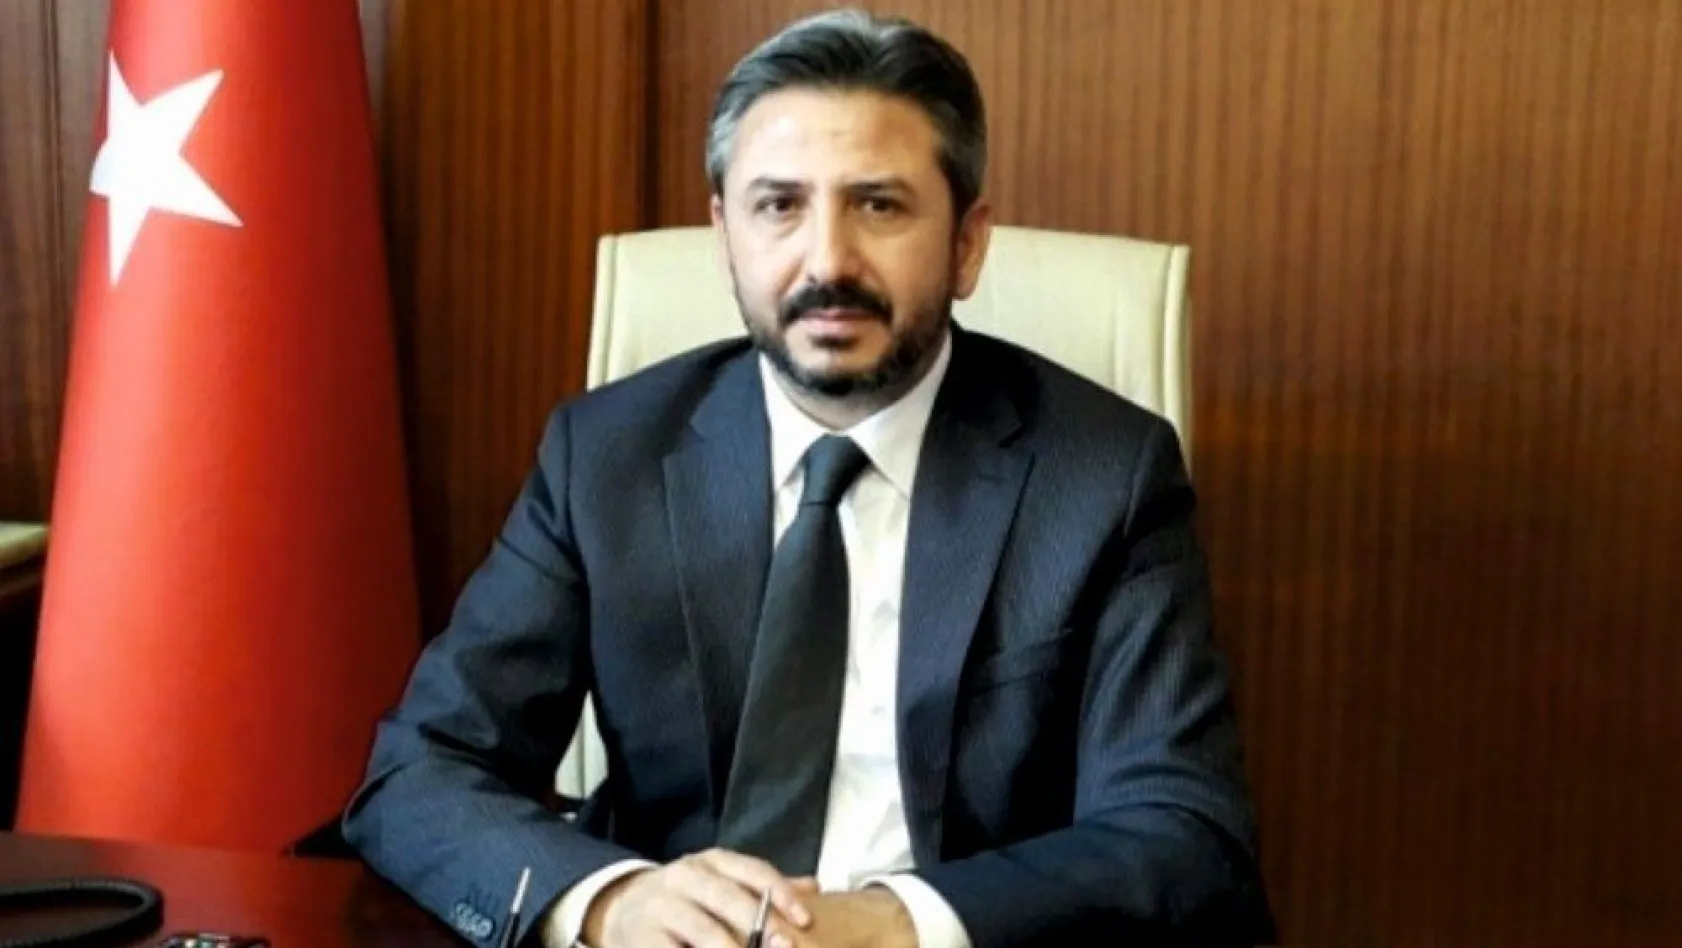 Milletvekili Ahmet Aydın'dan 2018 değerlendirmesi
